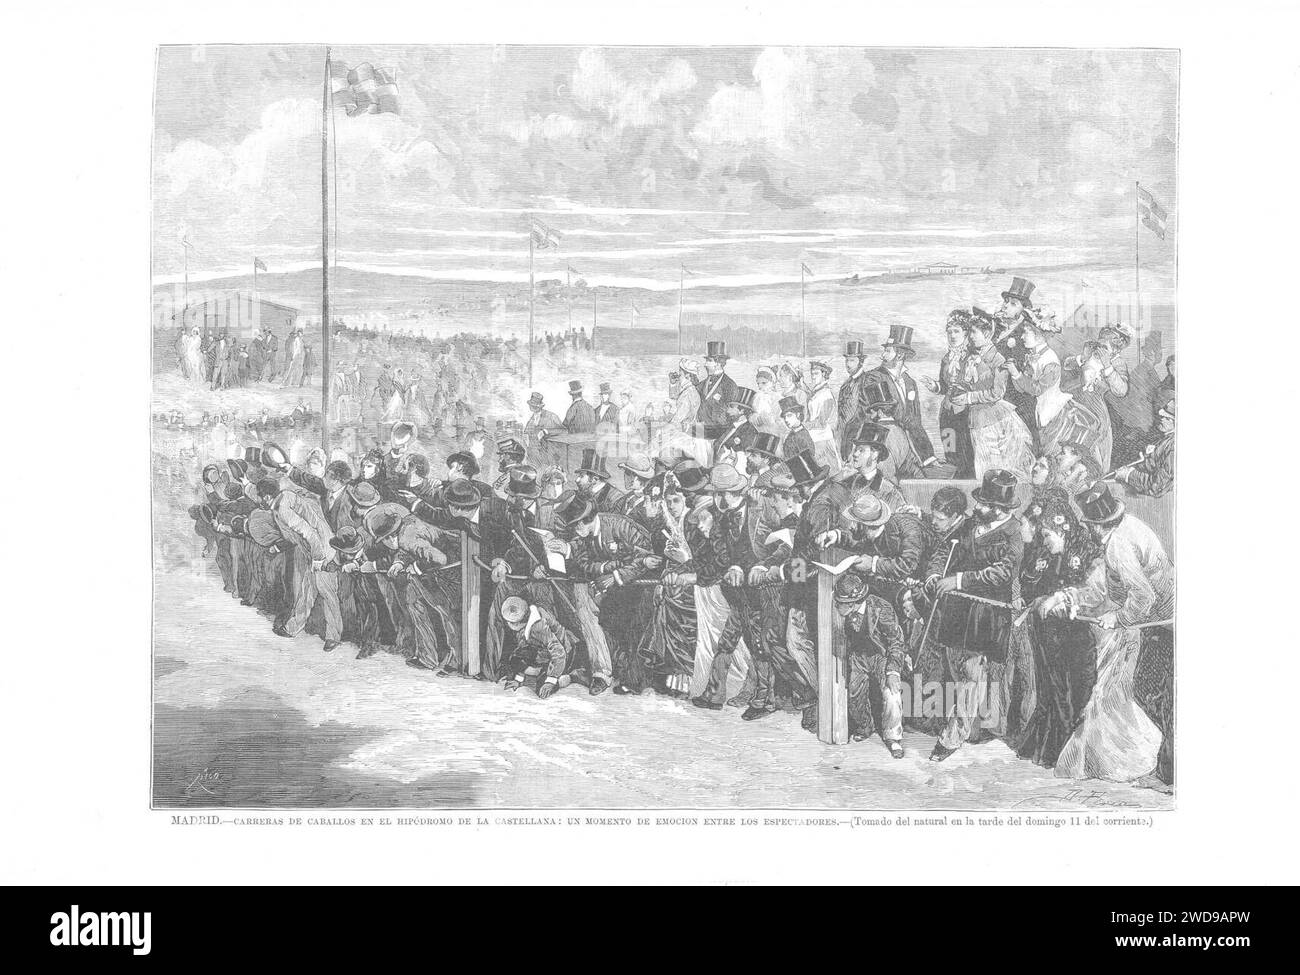 1879-05-22, La Ilustración Española y Americana, Madrid, Carreras de caballos en el hipódromo de la Castellana, Un momento de emoción entre los espectadores. Stock Photo